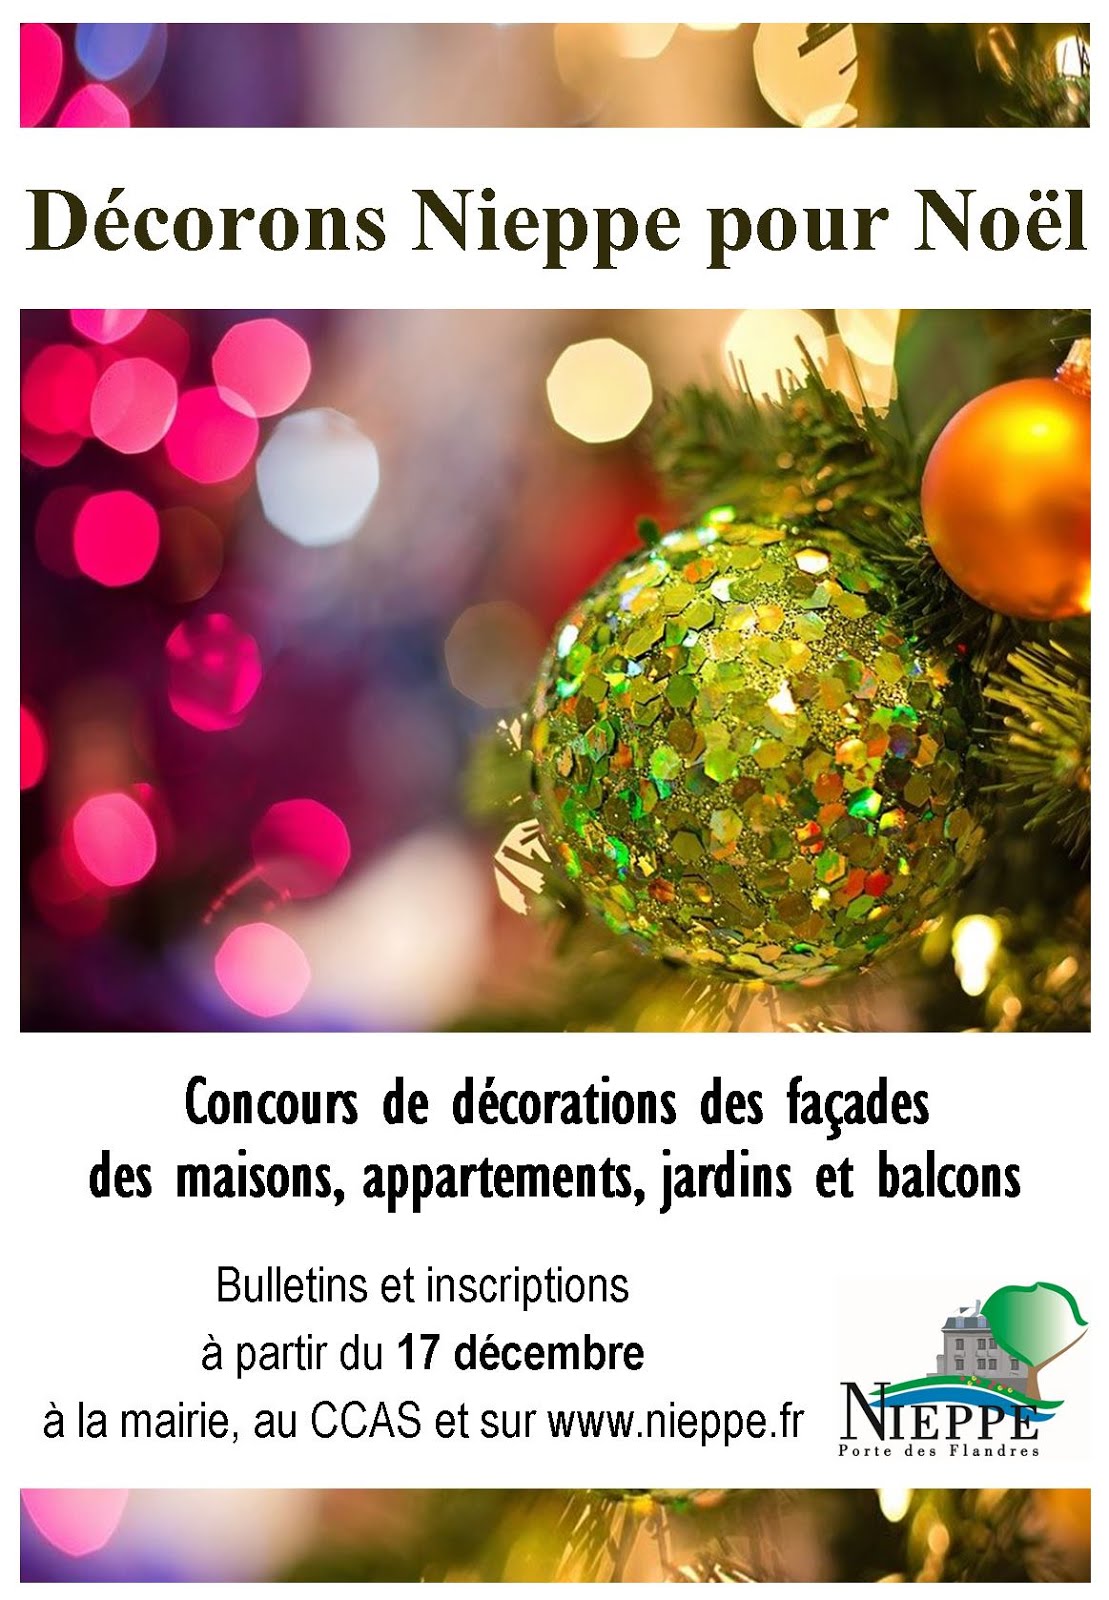 Décorons Nieppe pour Noël à partir du 17 décembre 2020